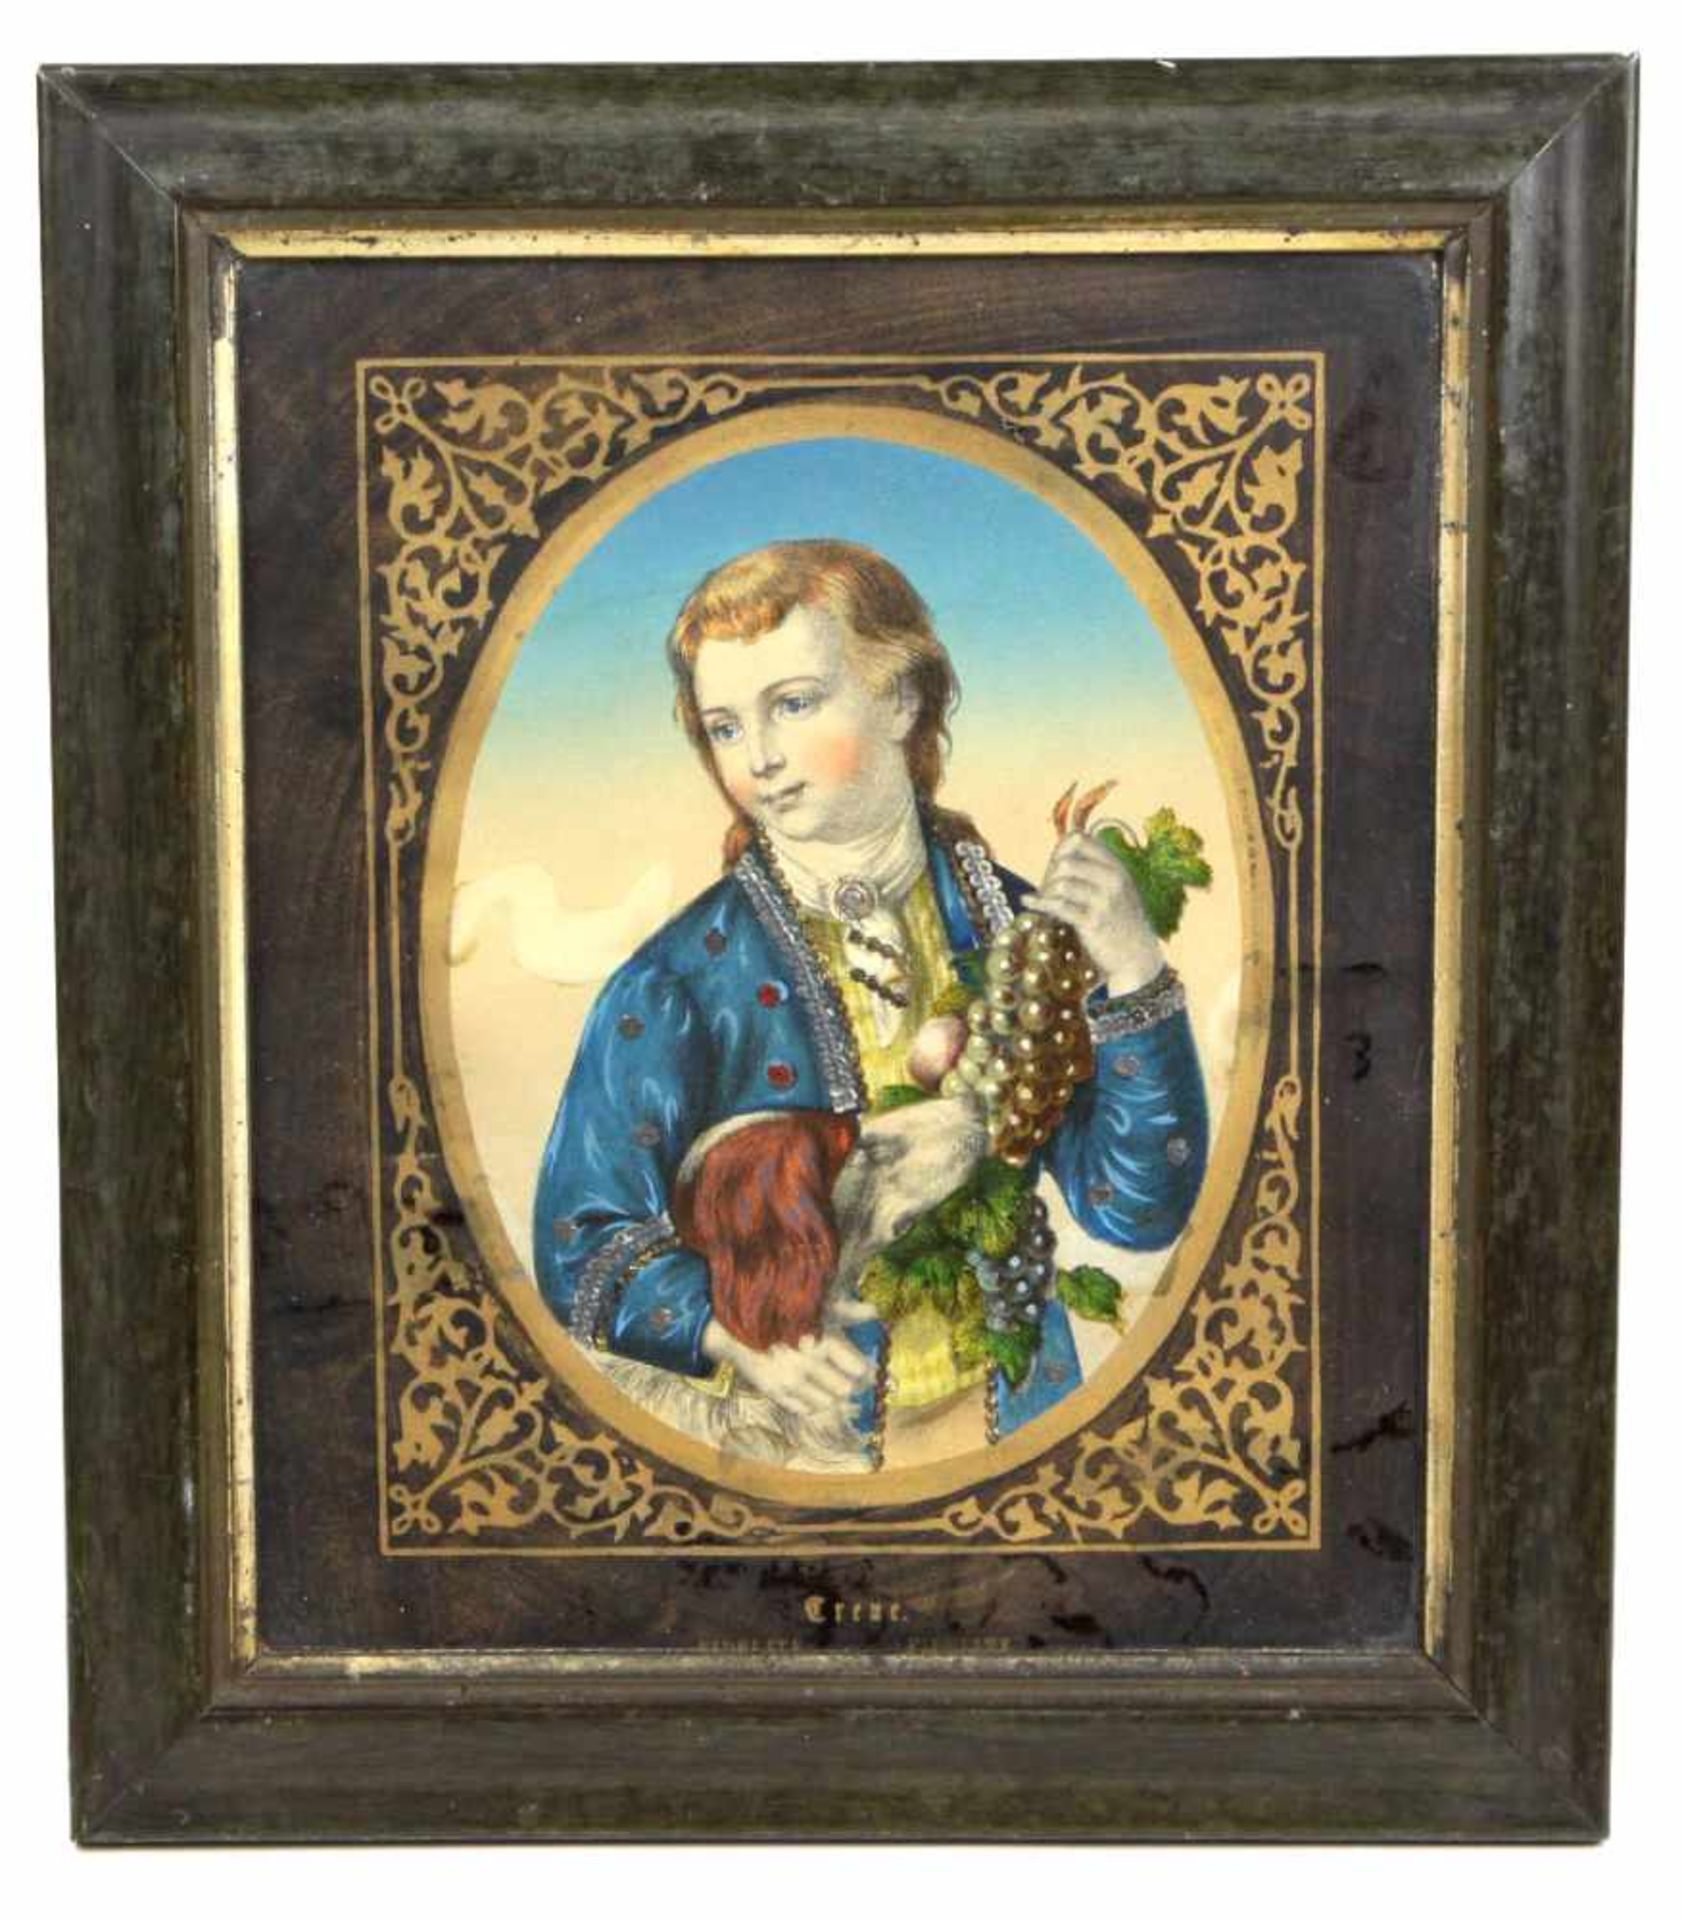 Biedermeier Portrait *Treue*farbig lithographiert, Portrait eines jungen Biedermeier Herren mit